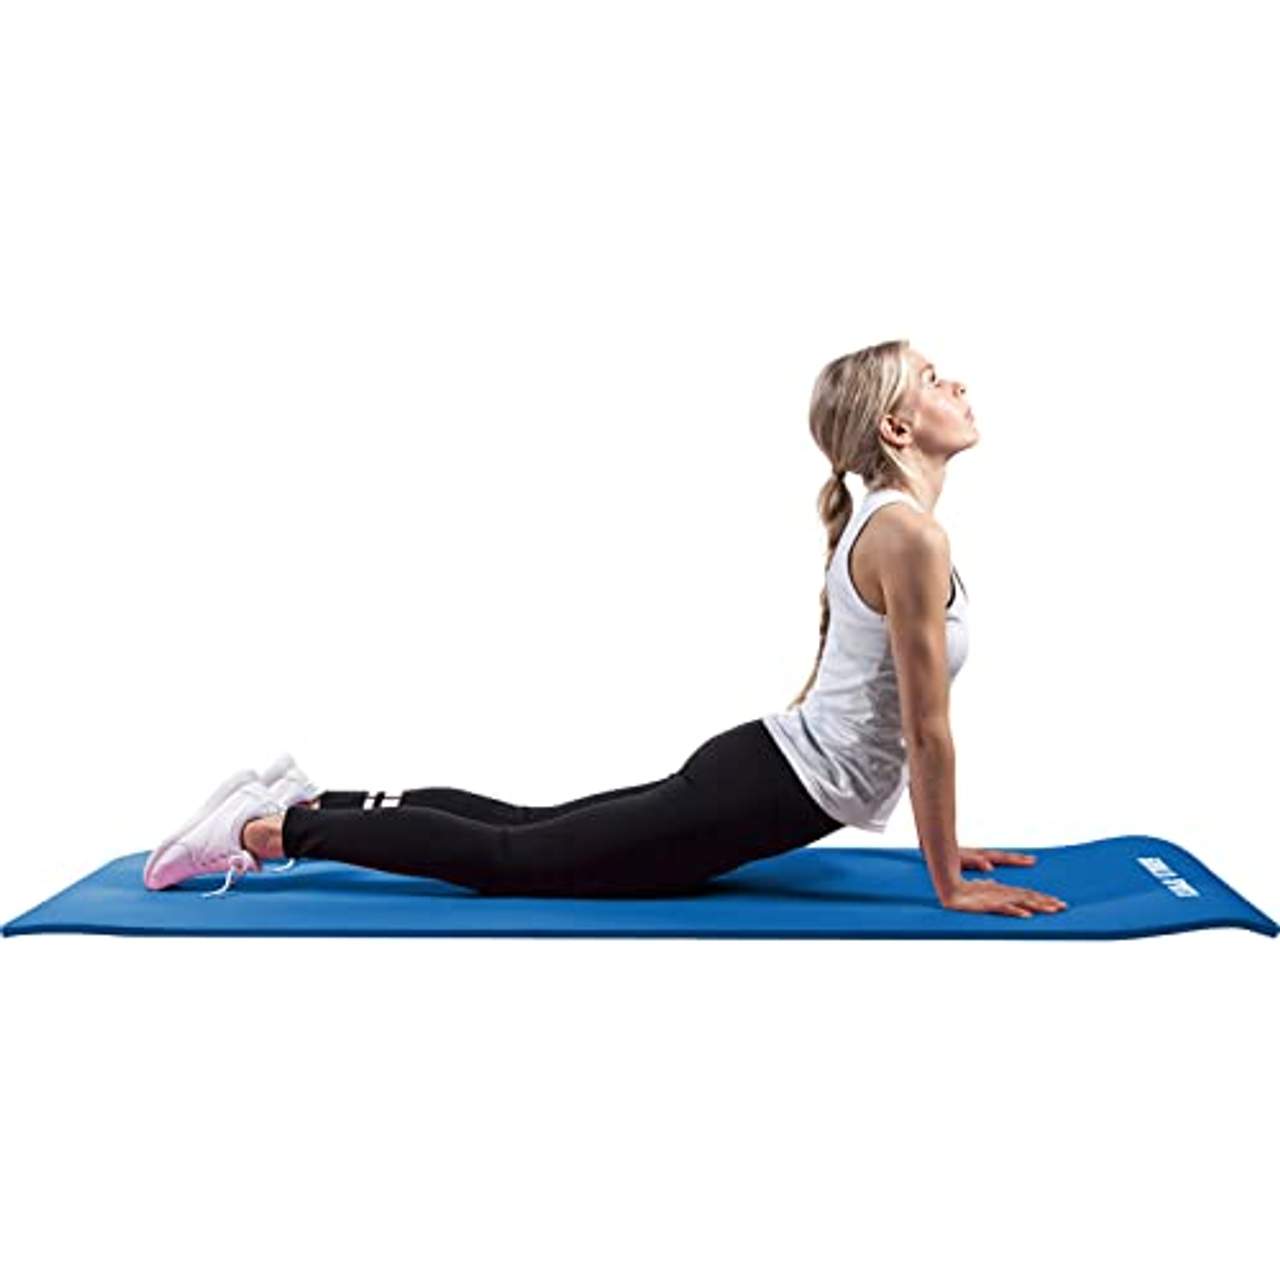 GORILLA SPORTS Yogamatte mit Tragegurt 190 x 60 x 1,5 cm rutschfest u. phthalatfrei